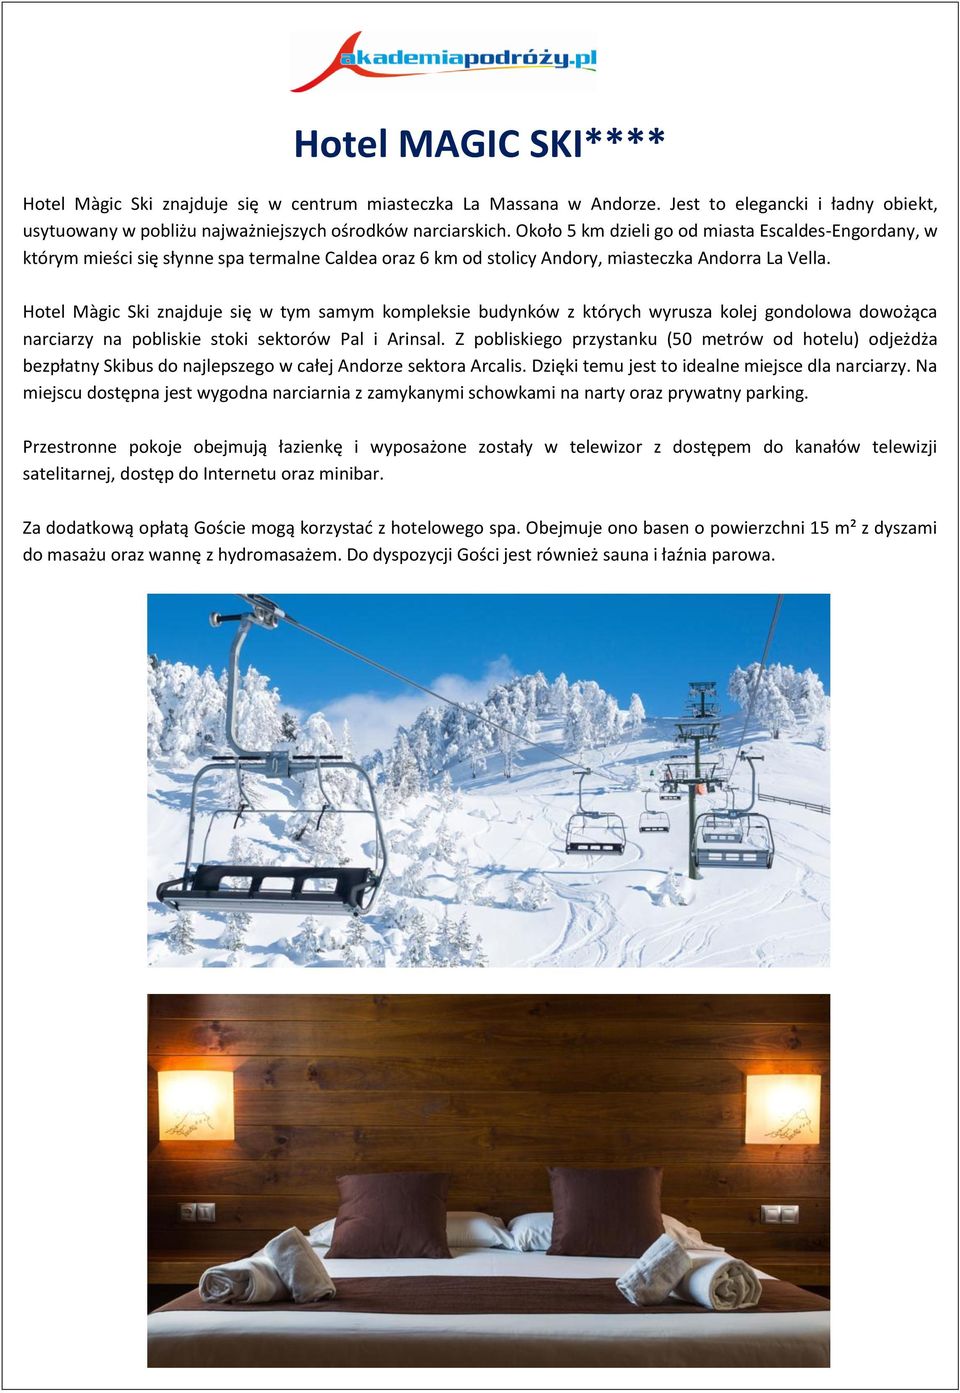 Hotel Màgic Ski znajduje się w tym samym kompleksie budynków z których wyrusza kolej gondolowa dowożąca narciarzy na pobliskie stoki sektorów Pal i Arinsal.